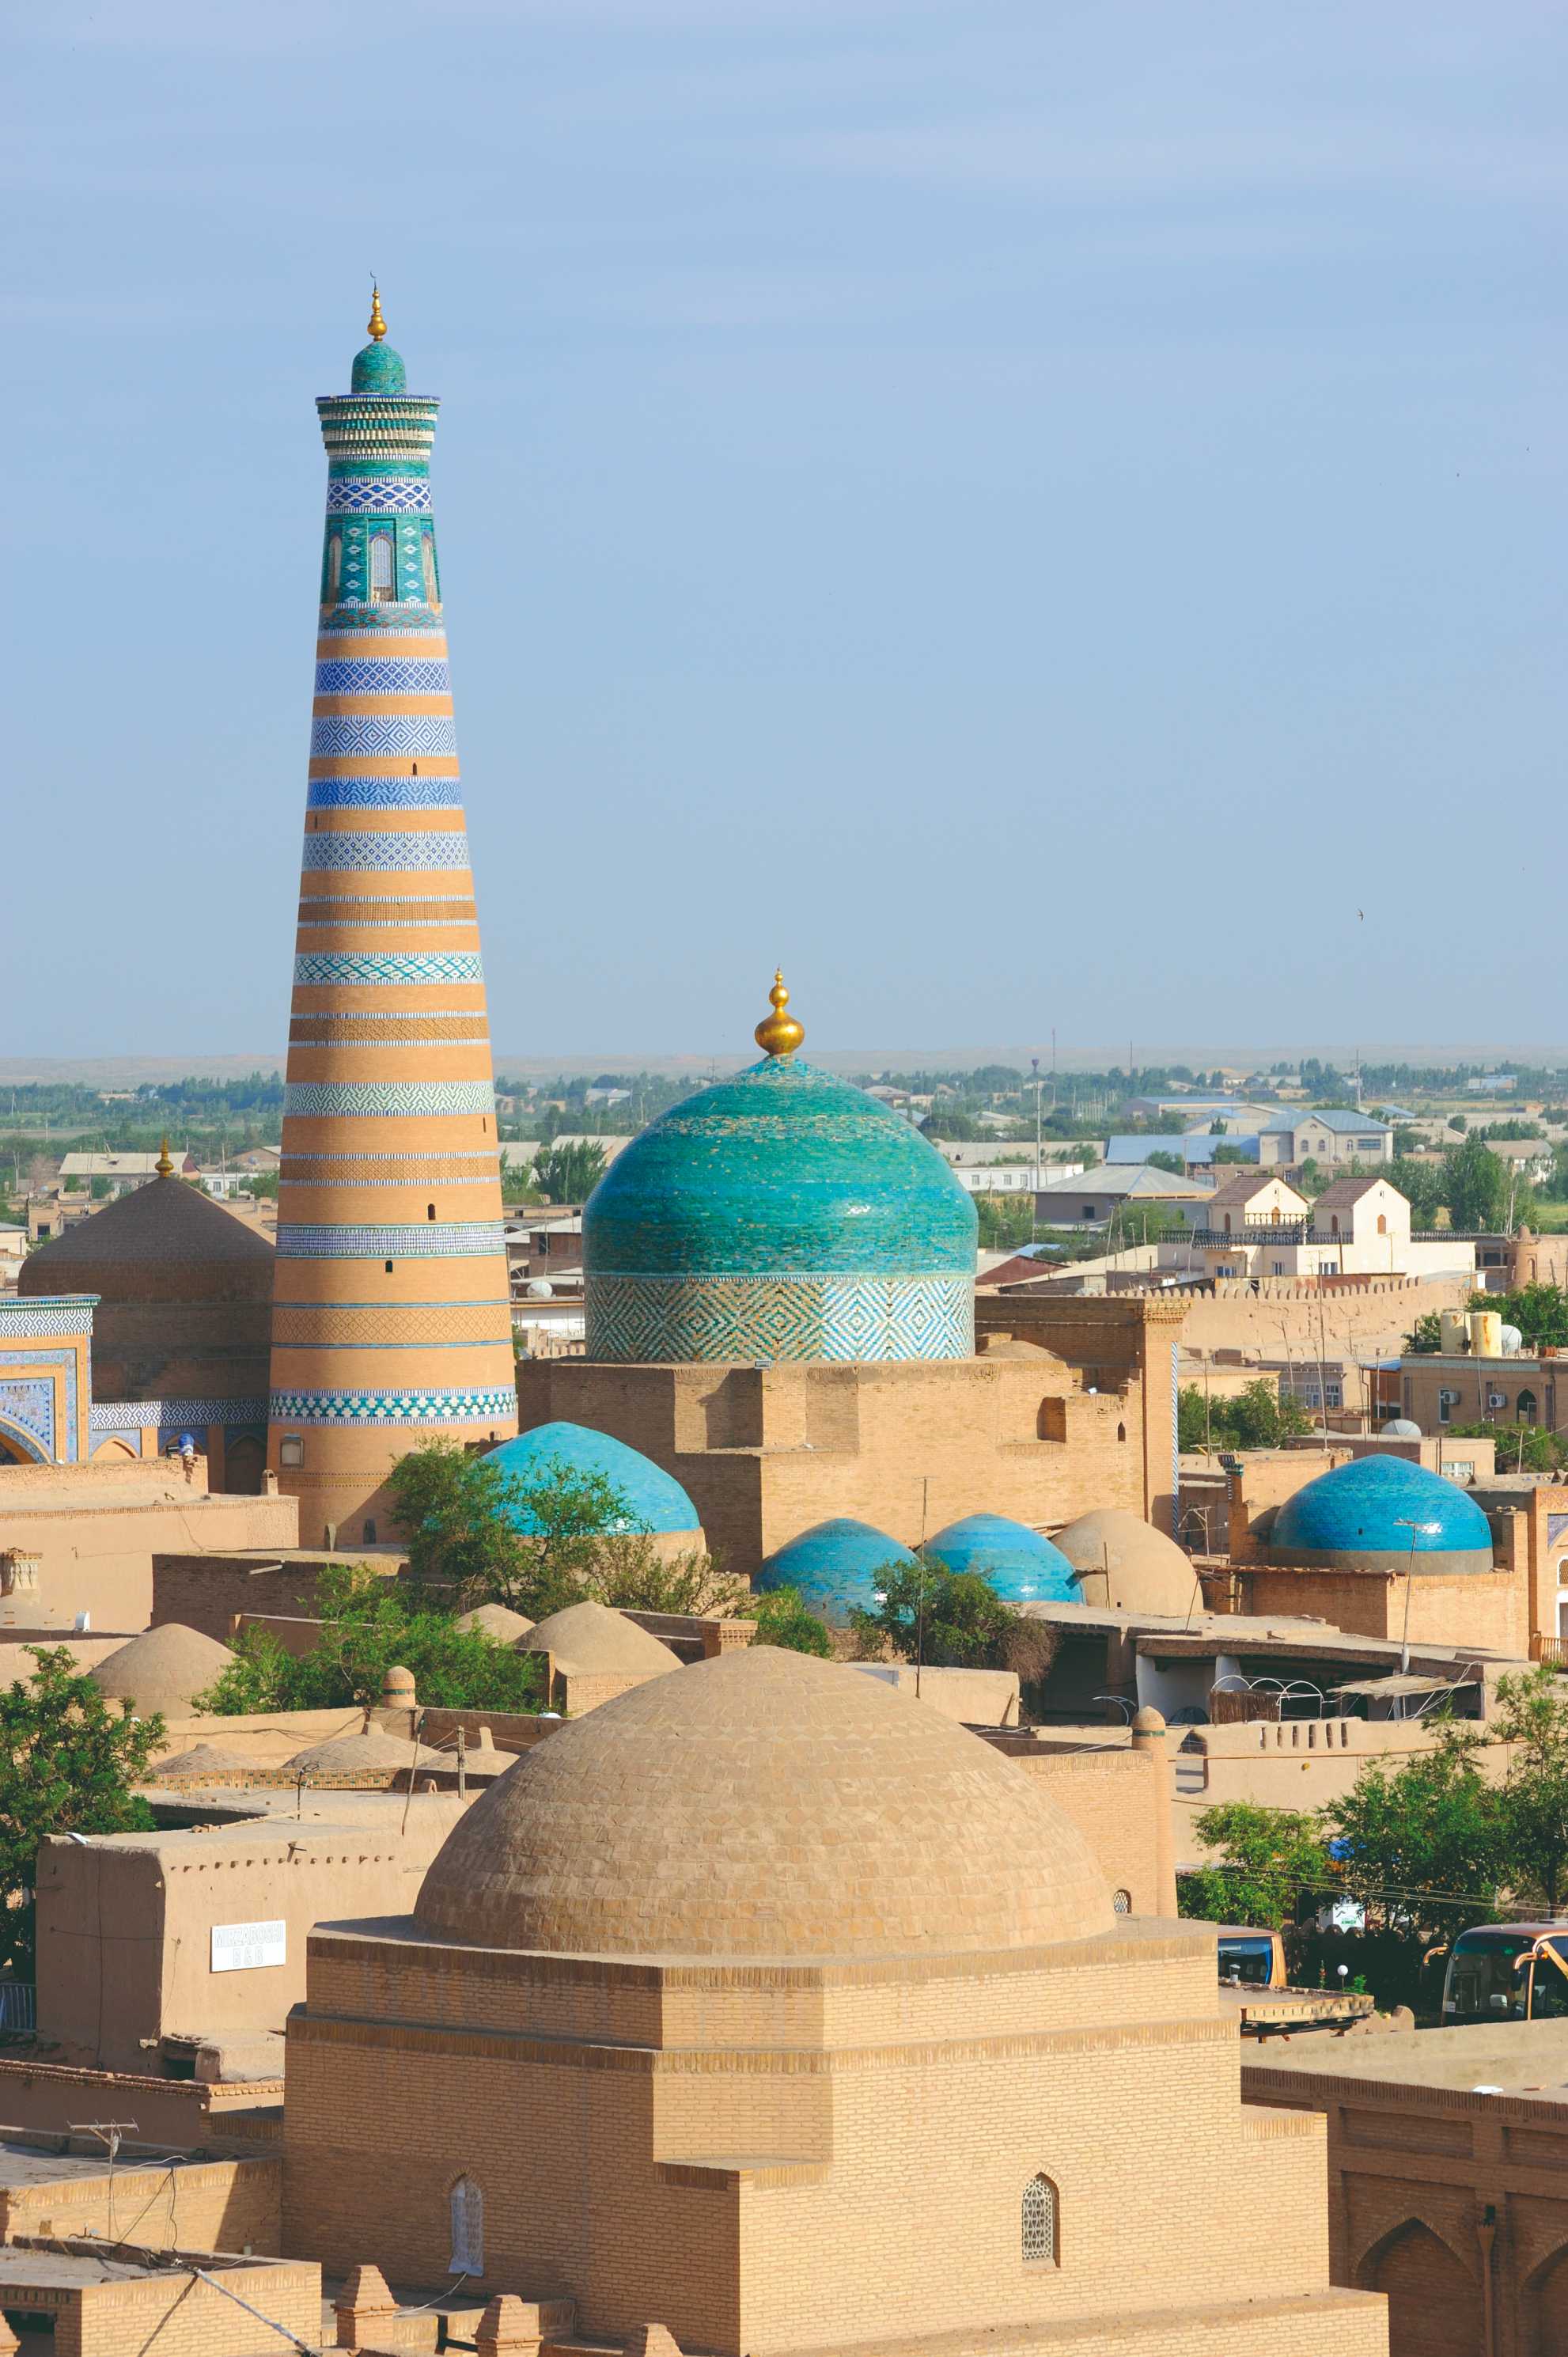 Vue vers la madrasa et le minaret Islam Khodja, depuis le haut d'une tour du mur d'enceinte.